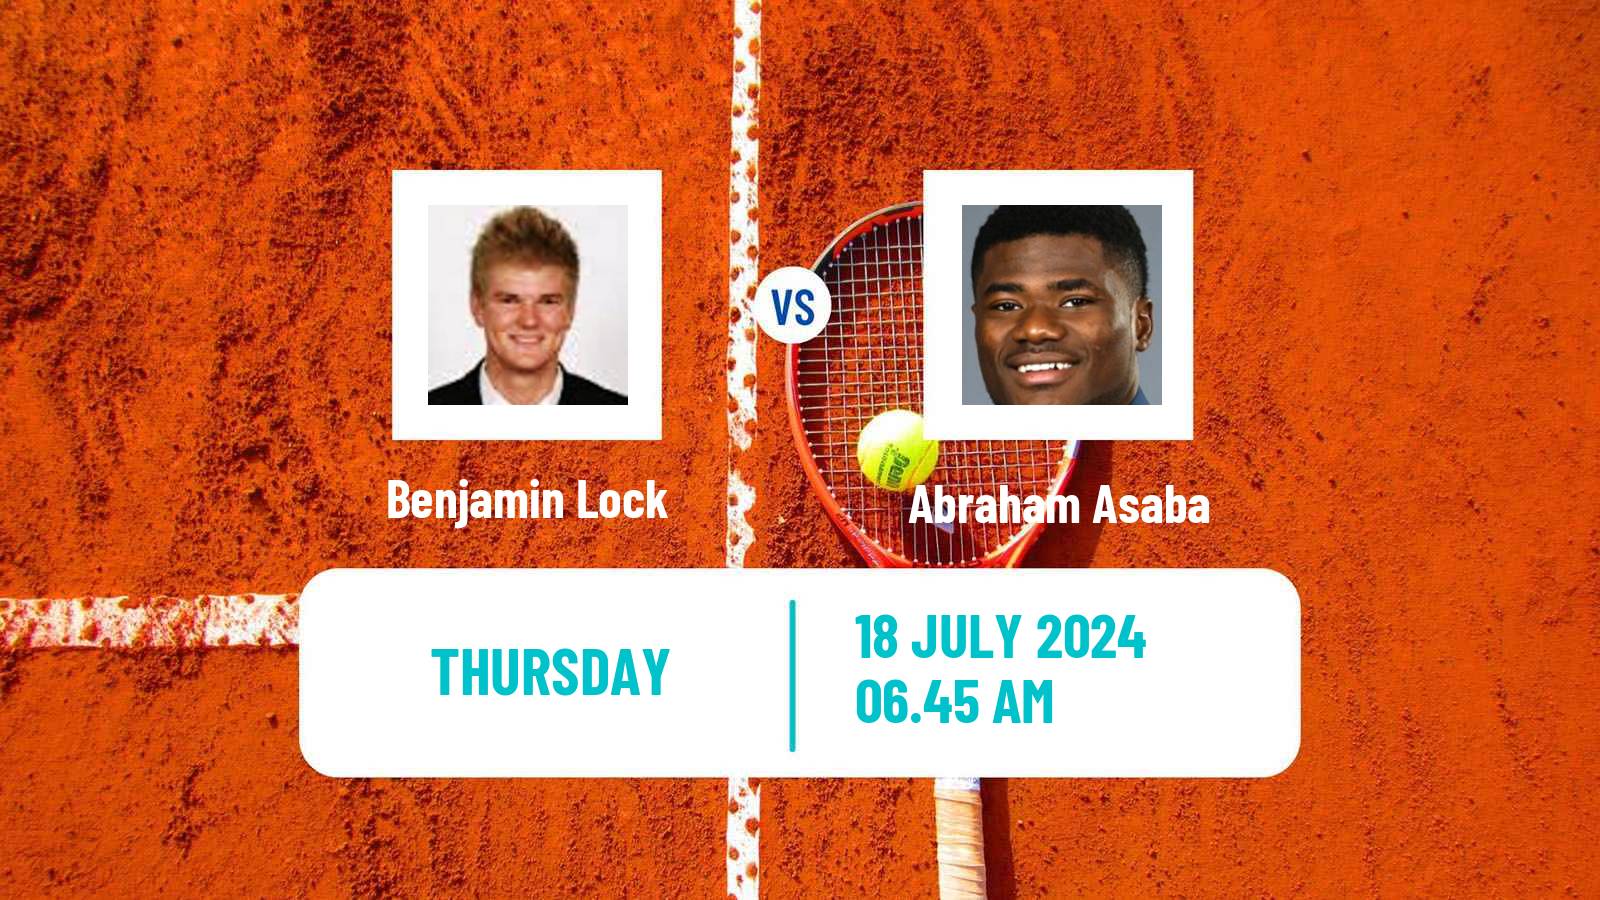 Tennis Davis Cup Group III Benjamin Lock - Abraham Asaba